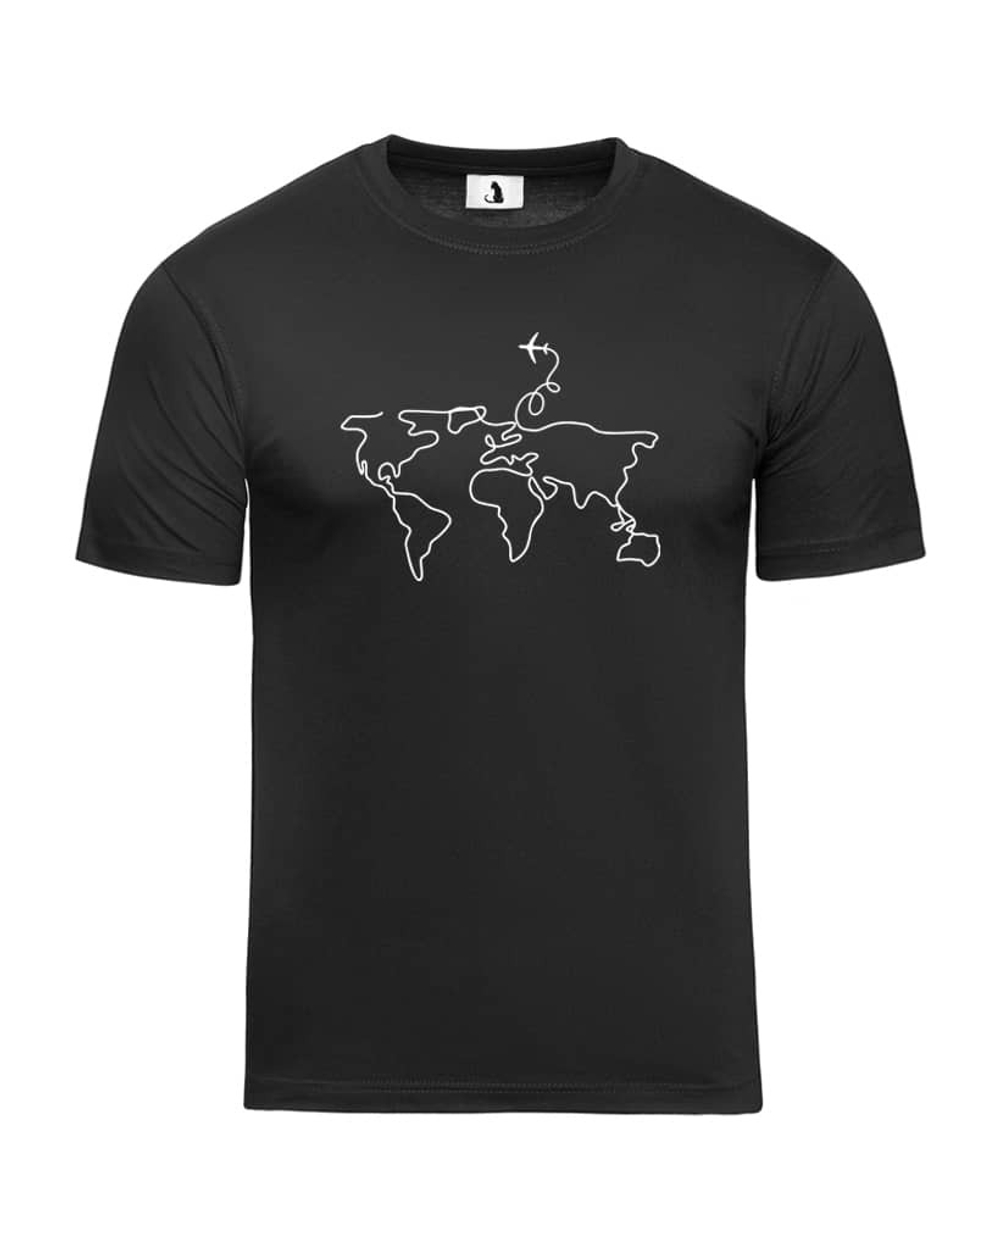 Футболка с самолетом Карта мира мужская черная